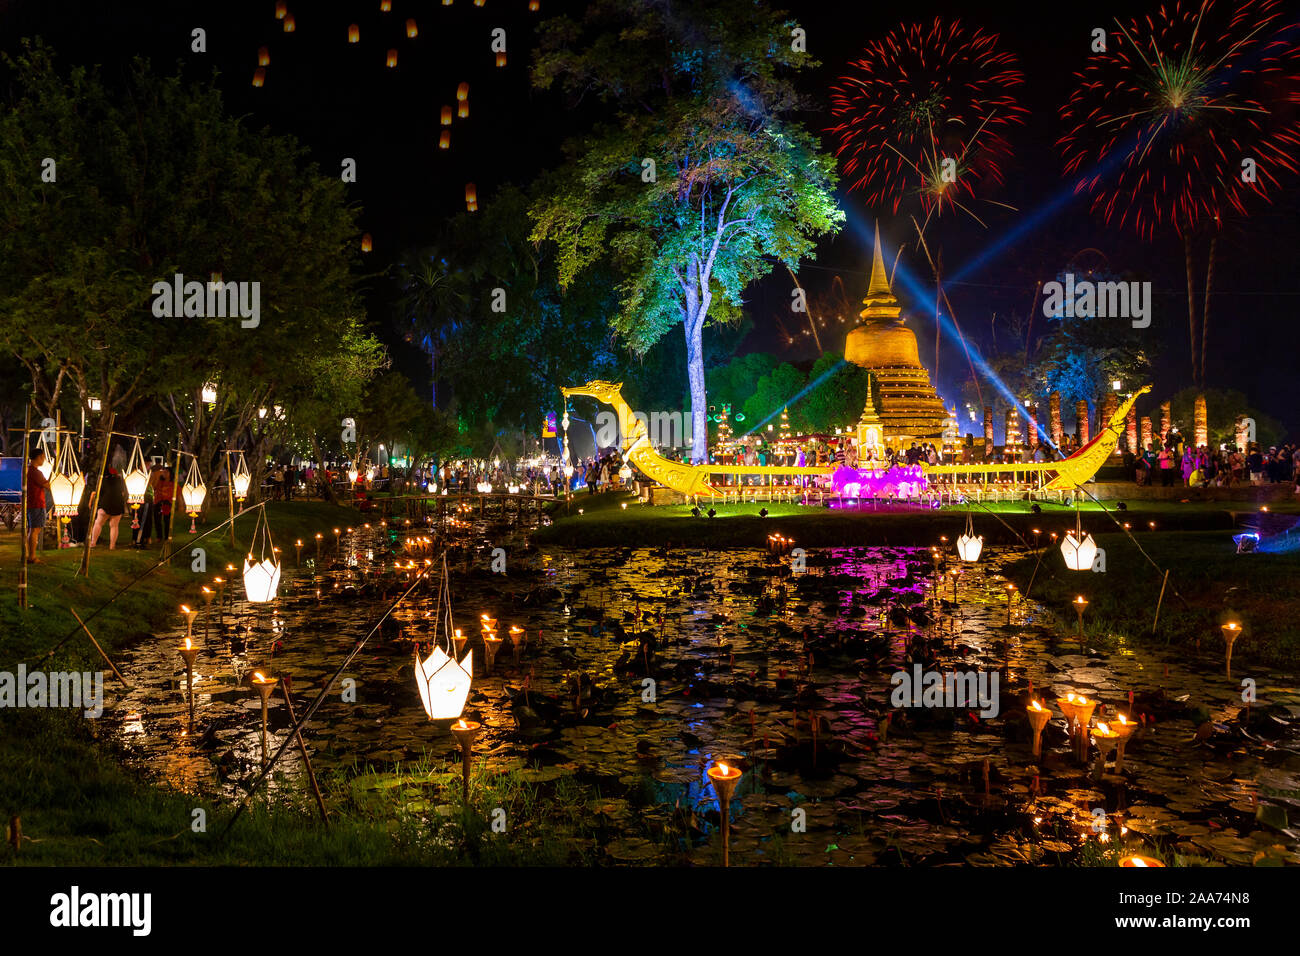 Belle réflexion d'artifice sur Pagode Festival Loy Krathong Sukhothai Thaïlande Ville historique incroyable. Colorés, ville. Banque D'Images